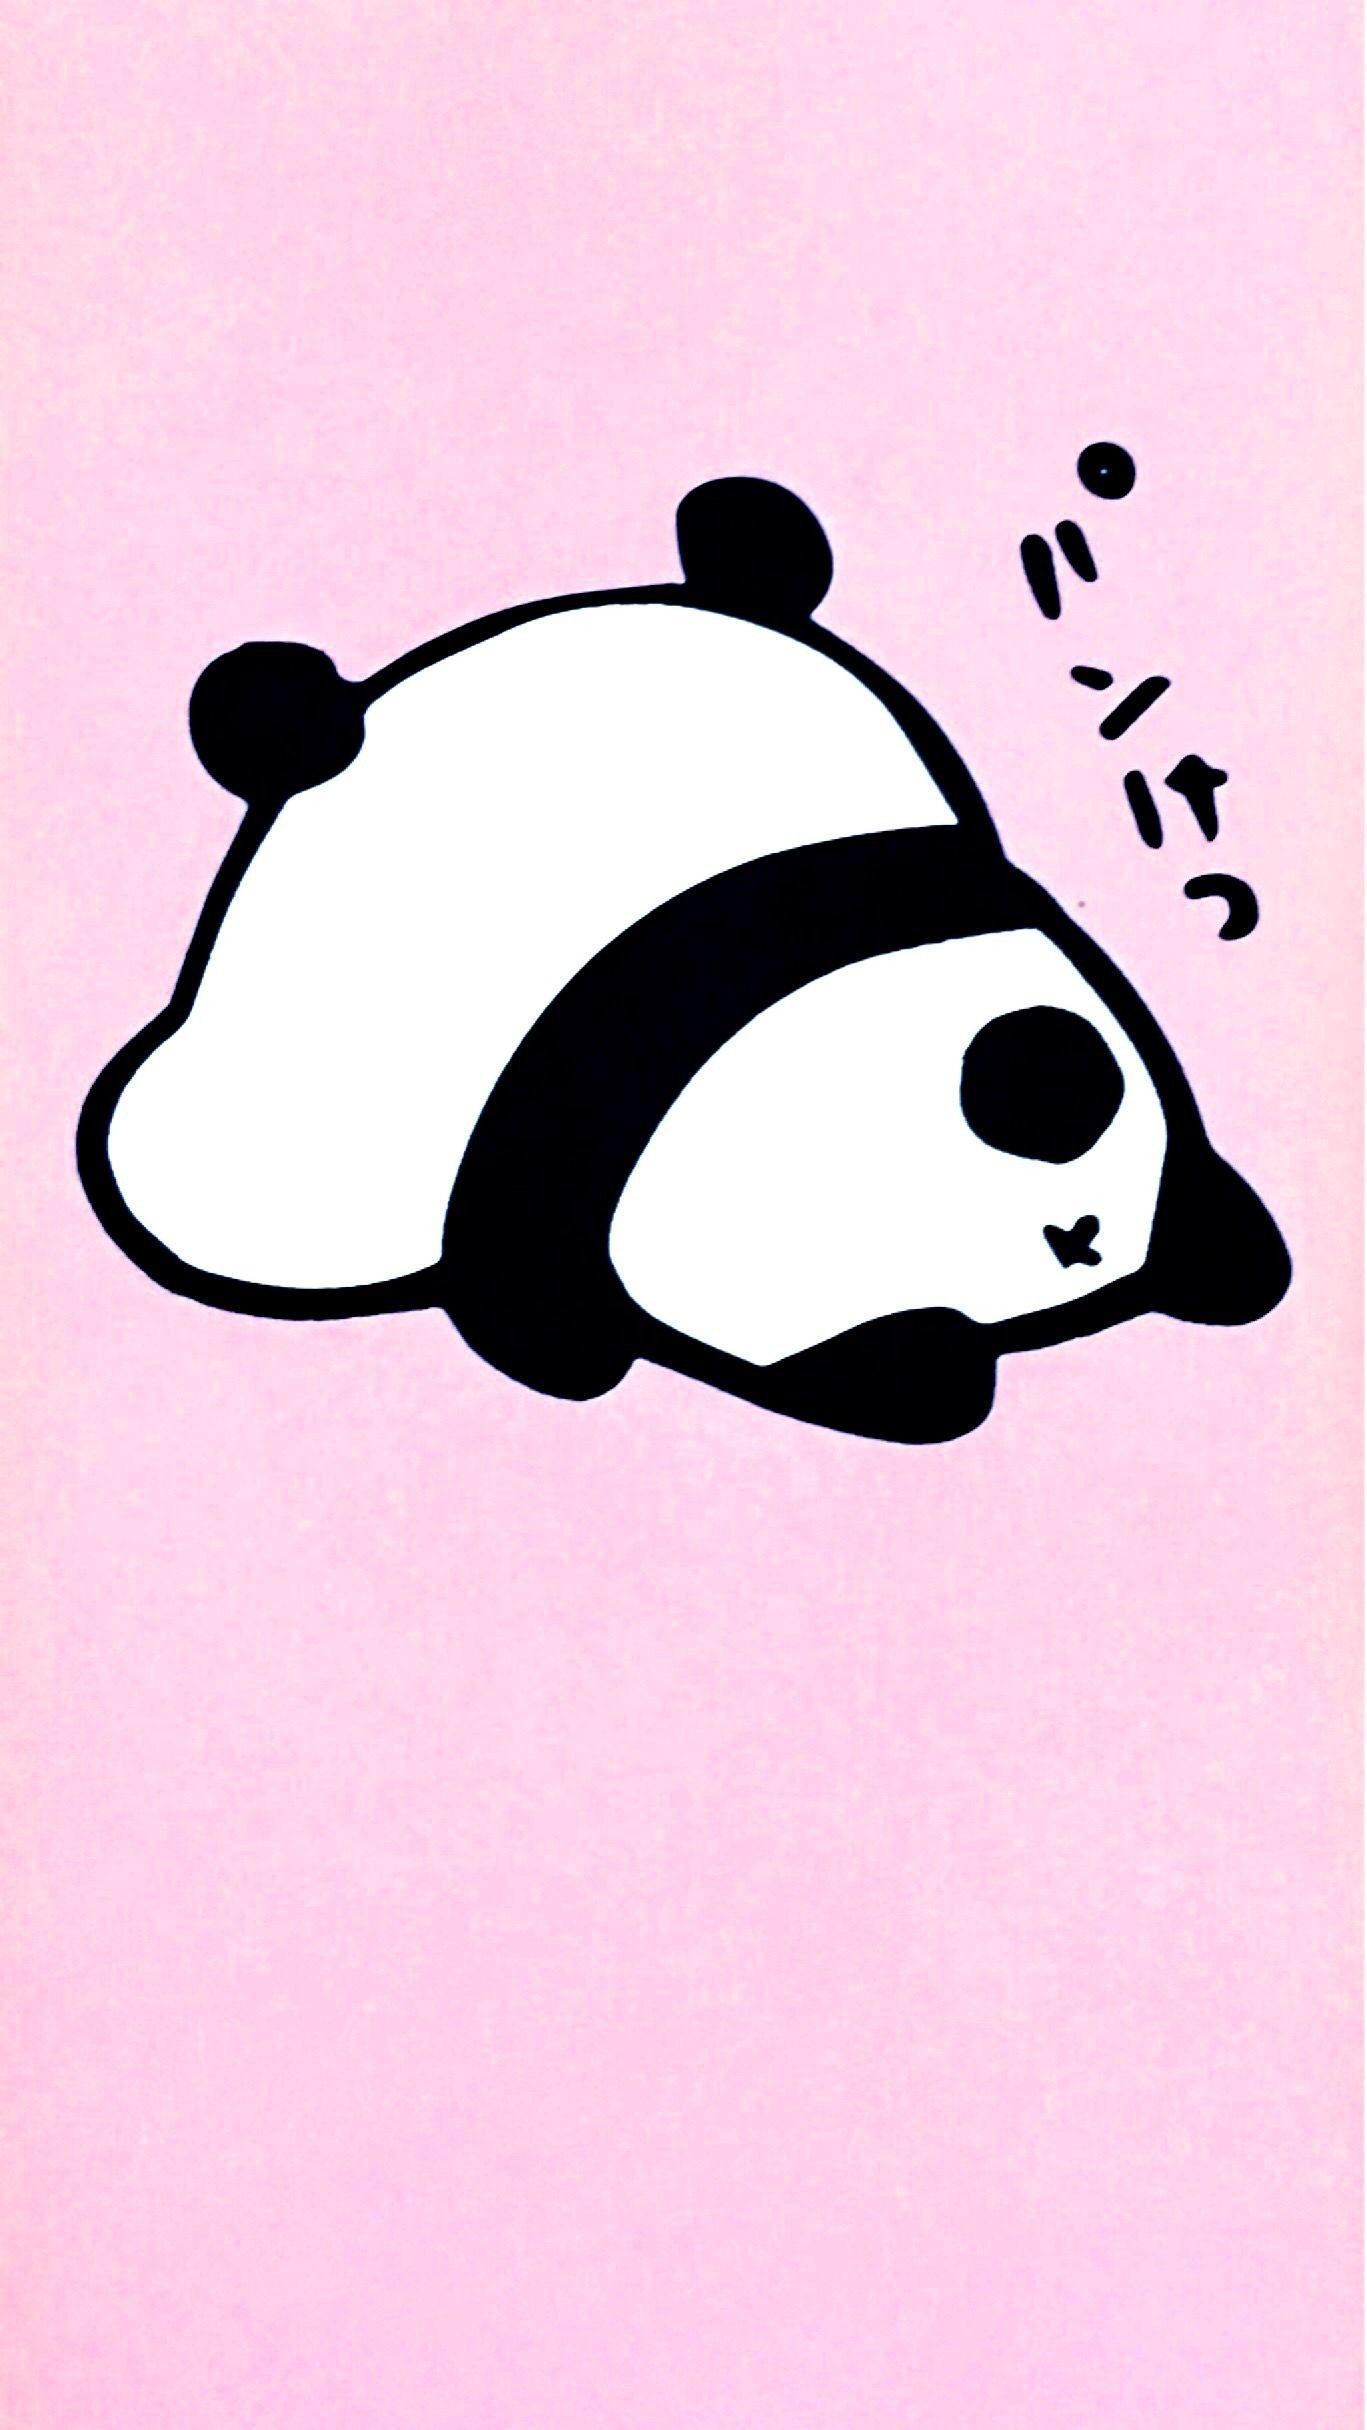 A sleeping panda on a pink background - Panda